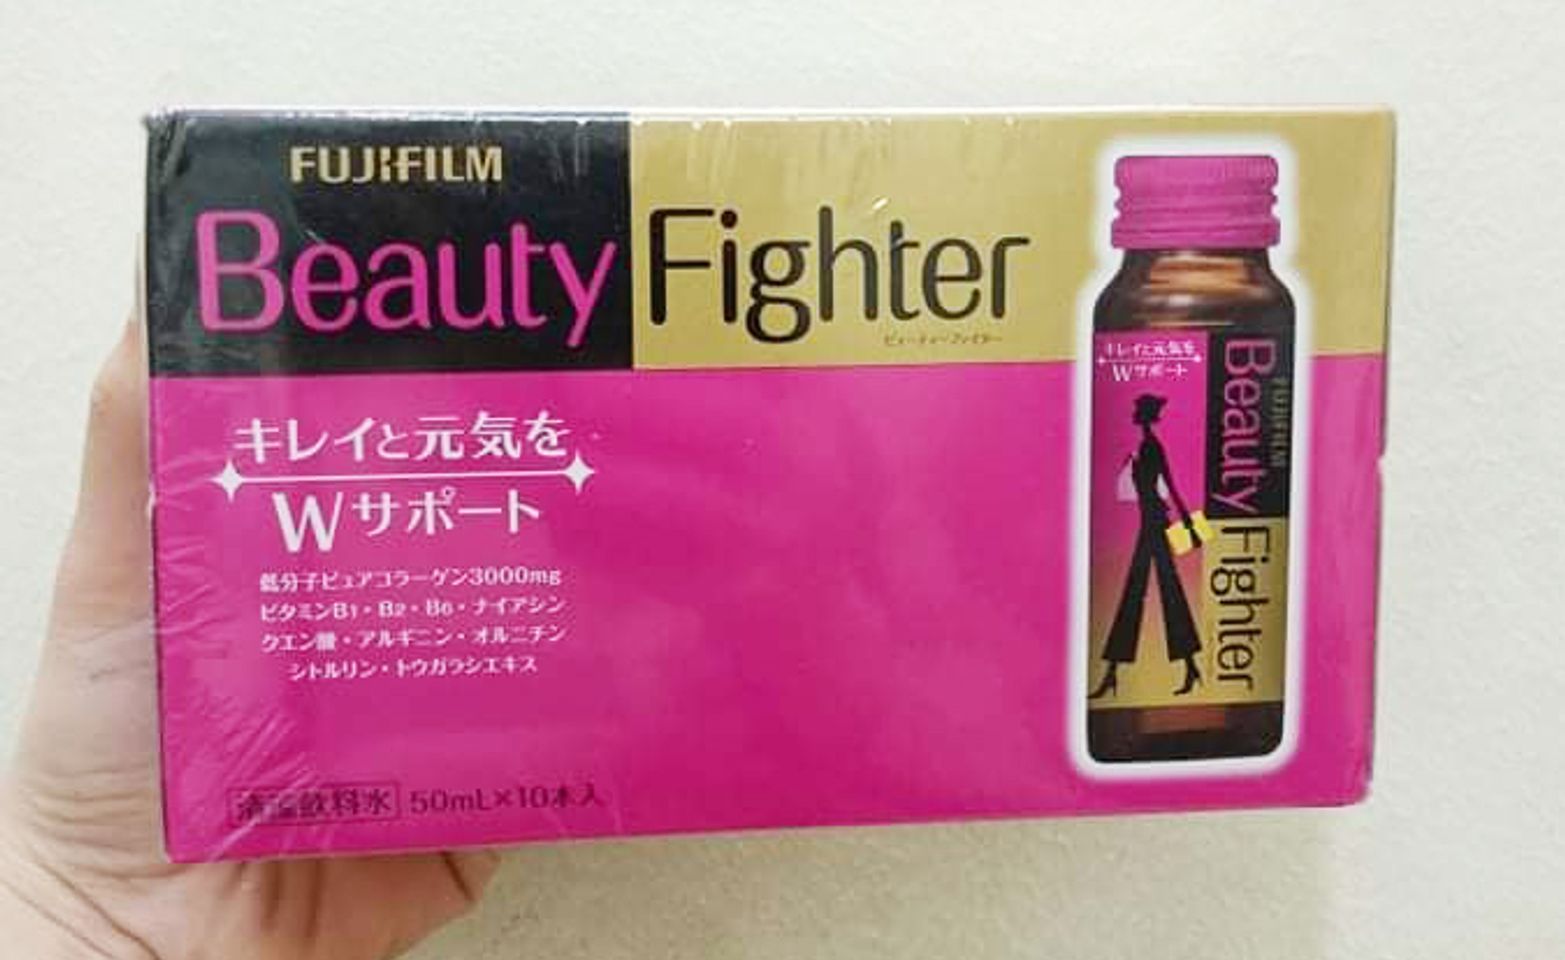 Beauty Fighter là nước uống làm đẹp đến từ thương hiệu nổi tiếng Fujifilm Nhật Bản